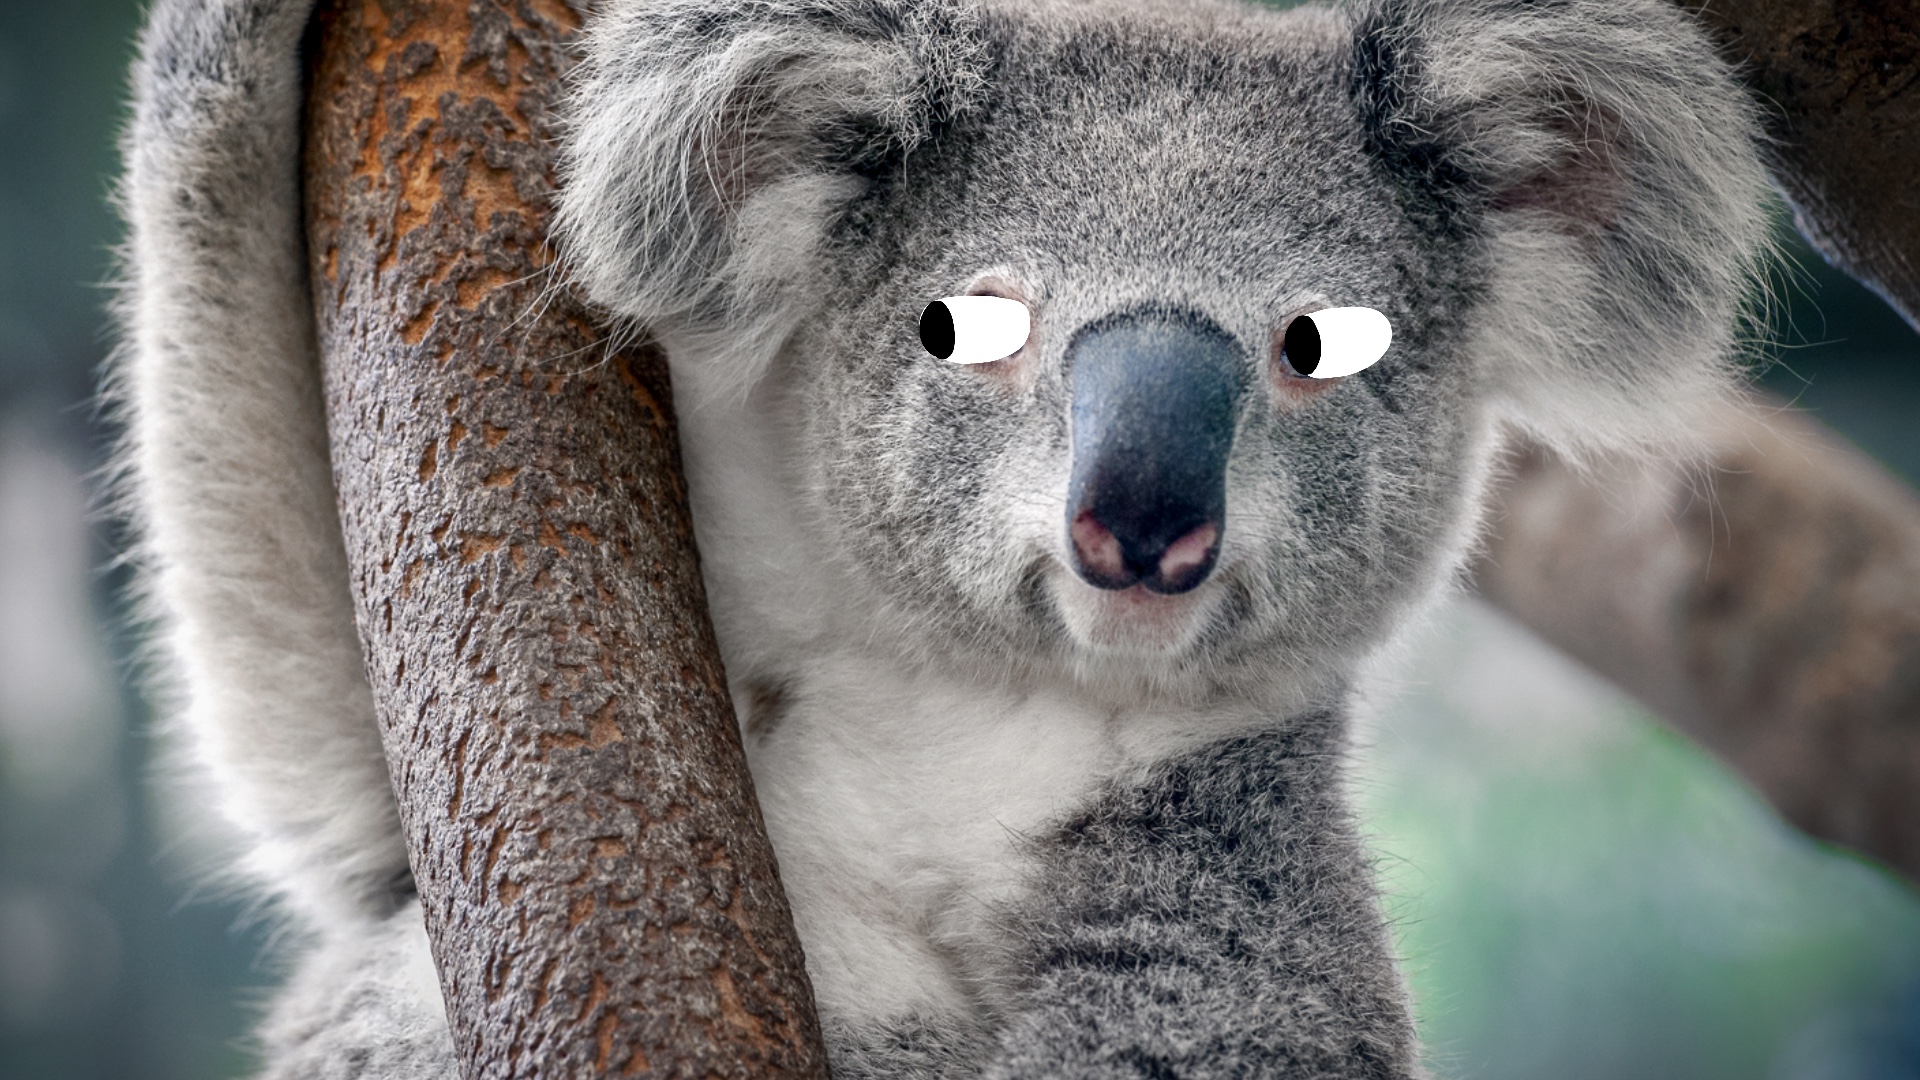 A cheeky koala